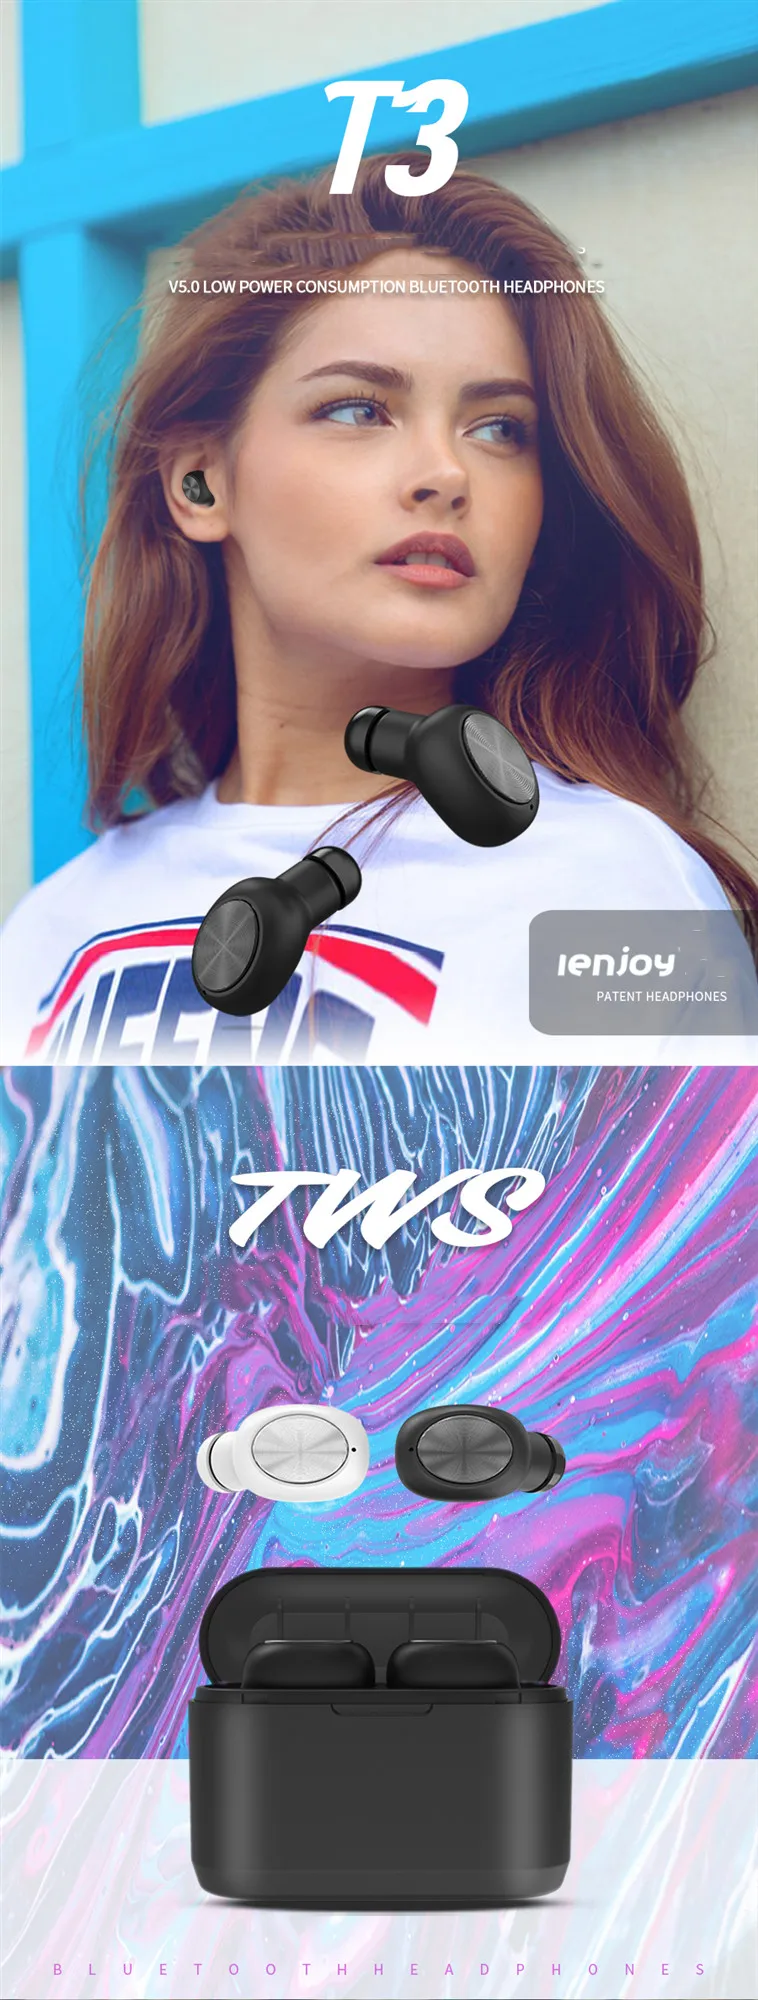 Full wireless headset IPX5 waterproof earphone wireless sport bluetooth headset